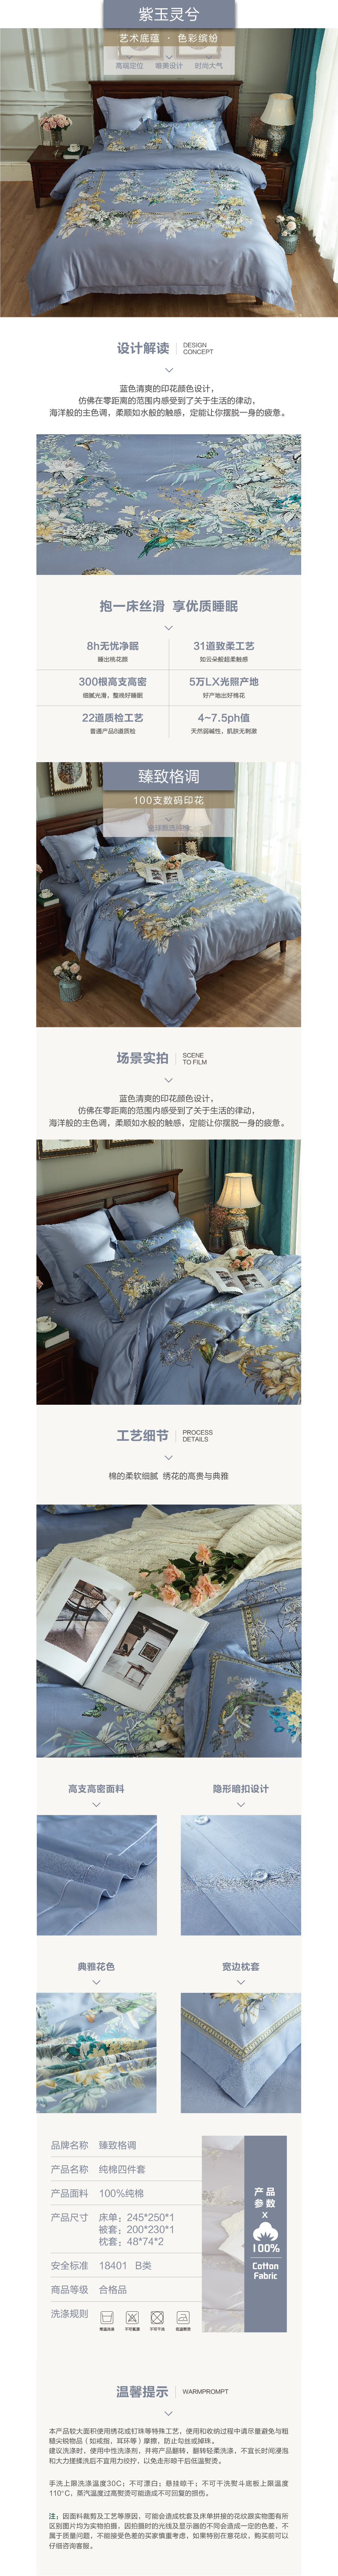 床上用品 纯棉四件套 蕾丝工艺 数码印花系列 紫玉灵兮